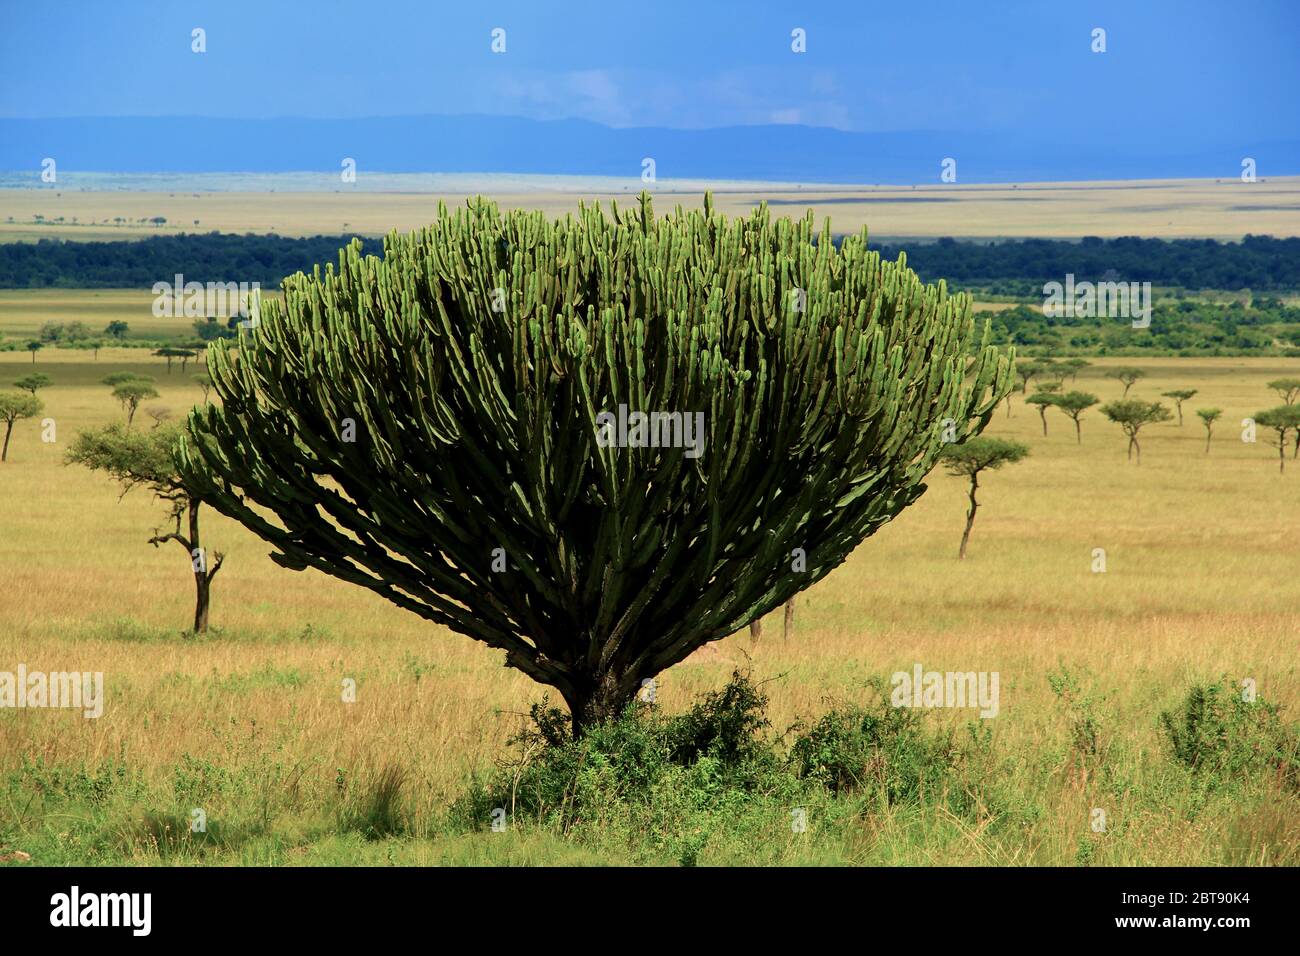 Une plante de savane verte typique, la plante succulente Euphorbia candelabrum, se trouve au premier plan de l'étendue infinie Banque D'Images